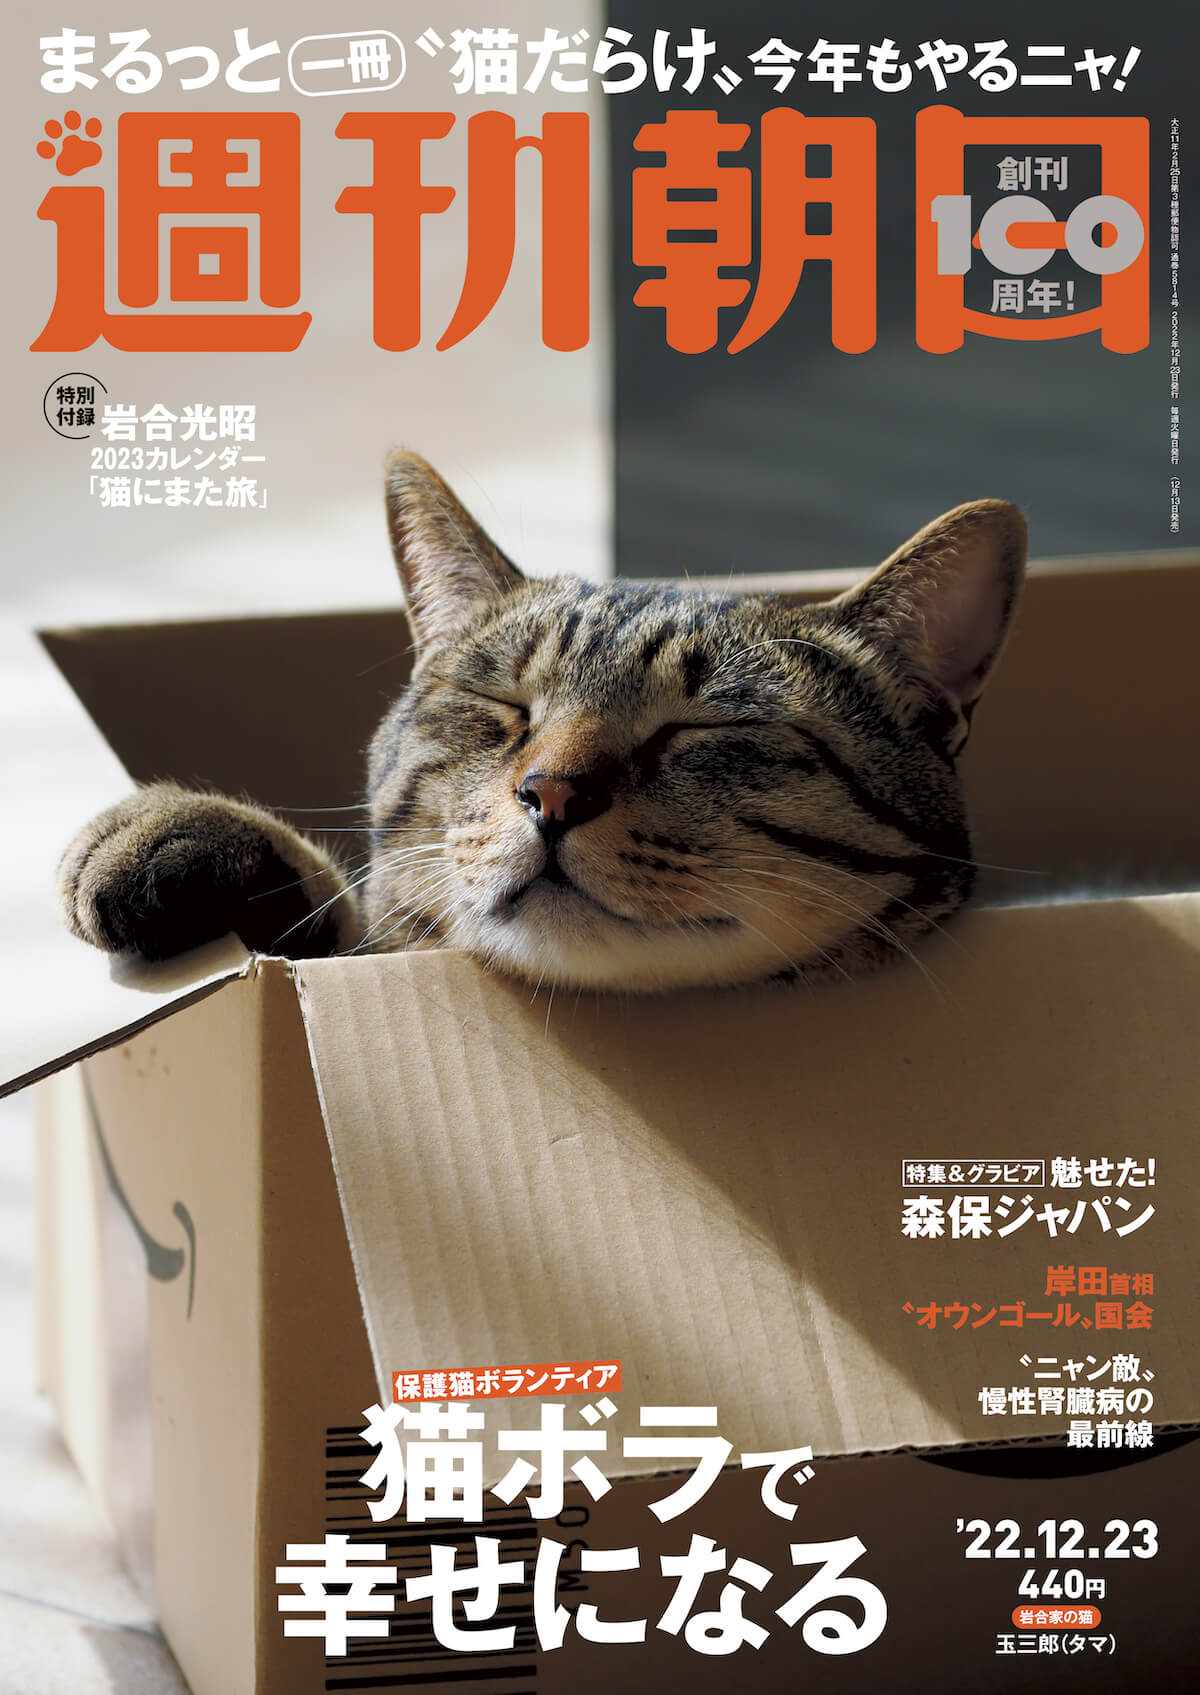 ネコ特集が収録された雑誌「週刊朝日 2022年12月23日号」の表紙イメージ